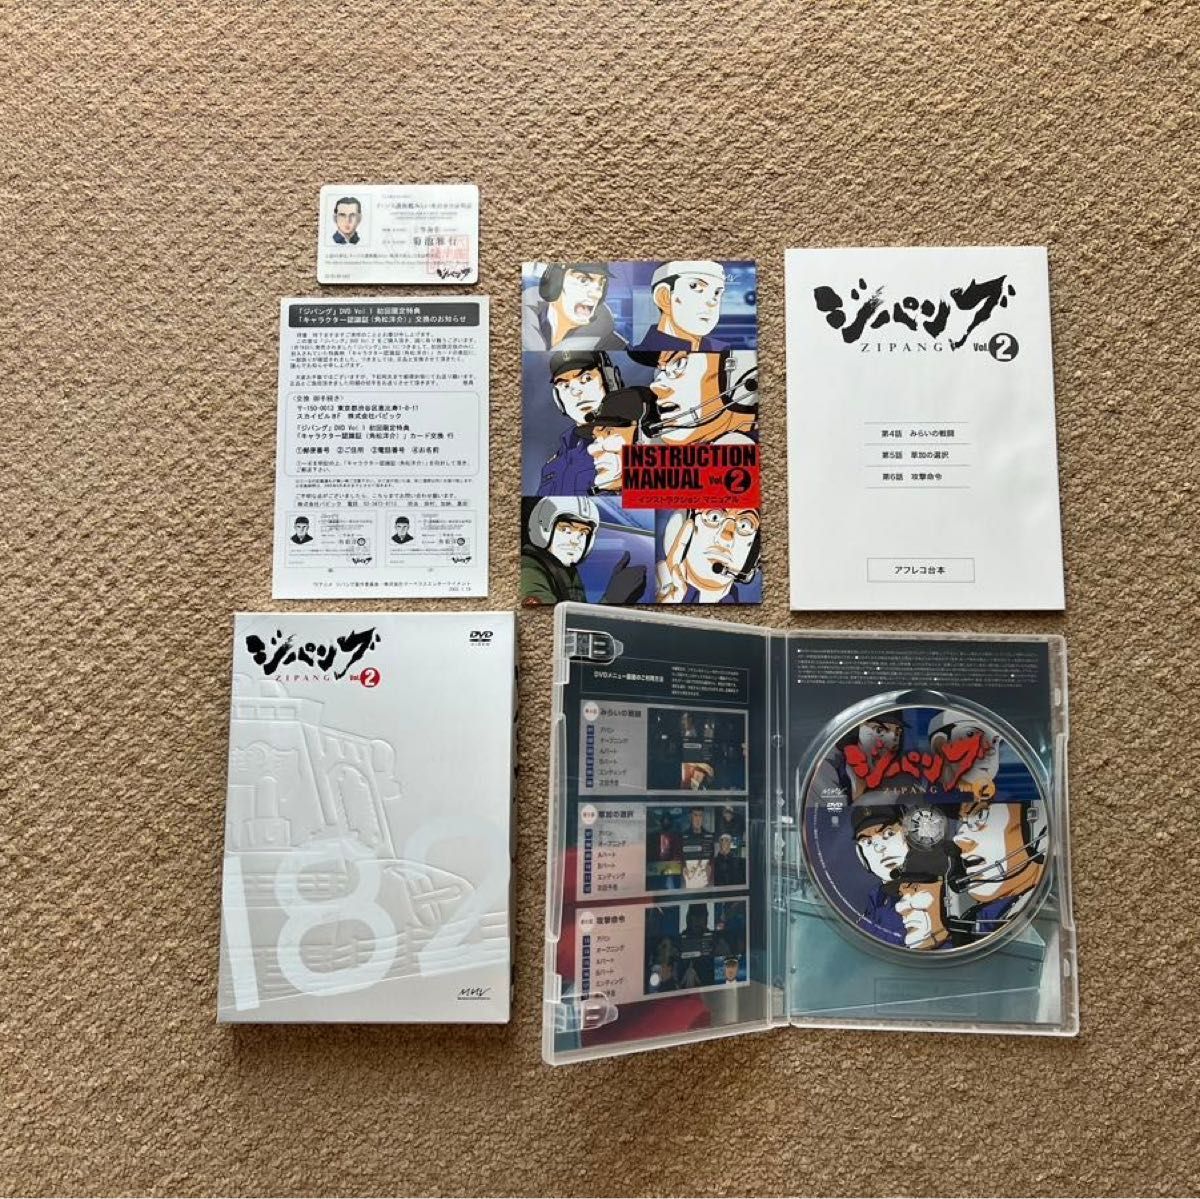 【送料無料】ジパング Vol.1〜Vol.9 DVD 初回限定版 アフレコ台本付き 乗員身分証明書付き